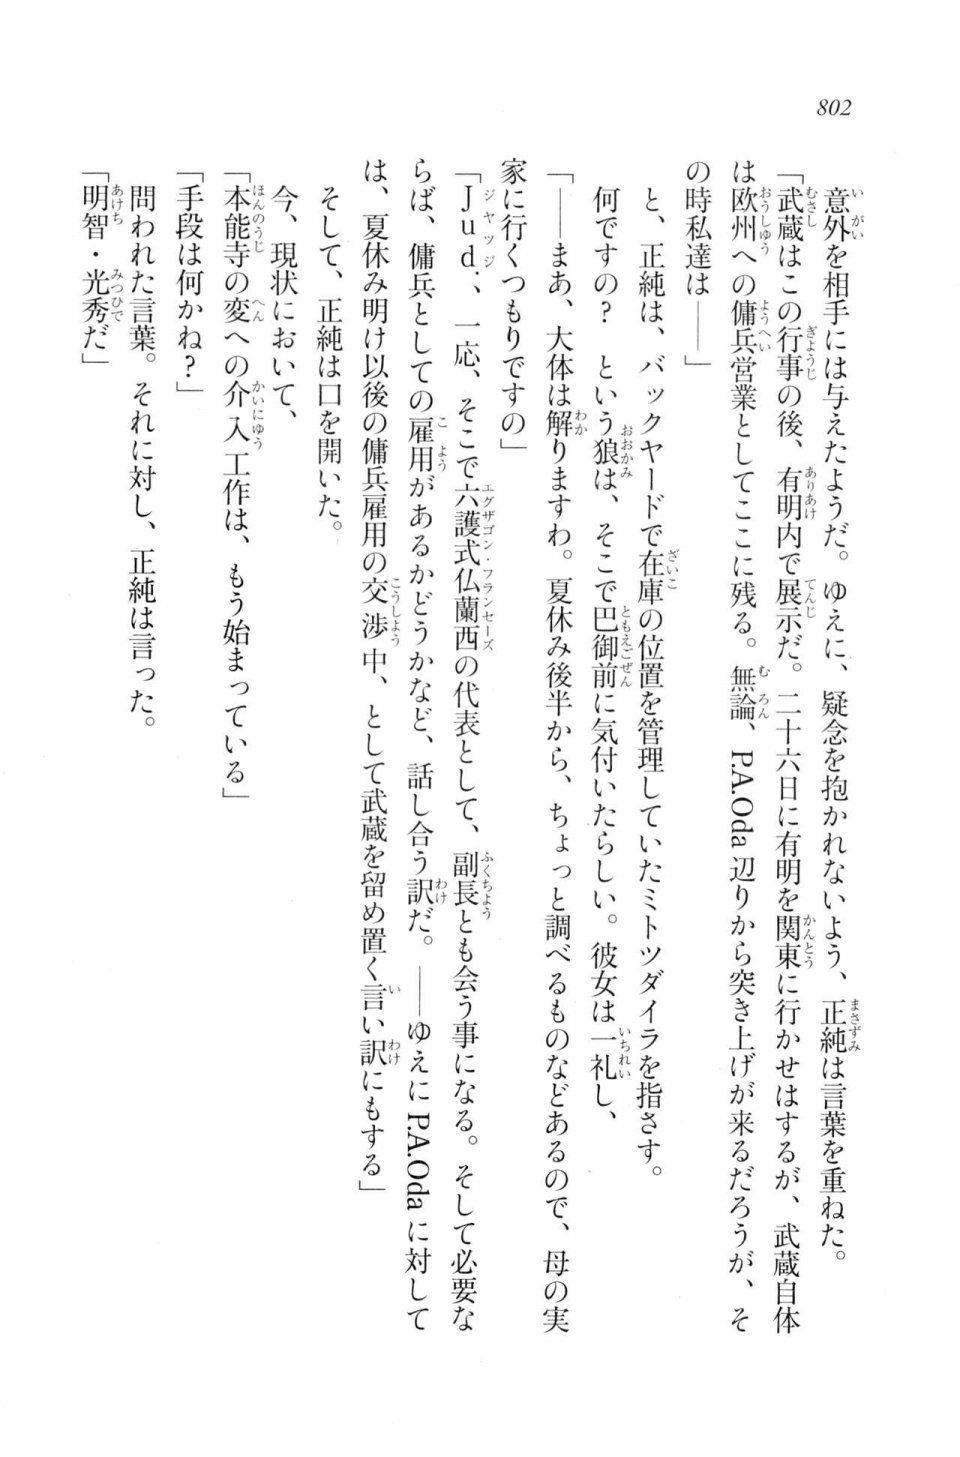 Kyoukai Senjou no Horizon LN Vol 20(8B) - Photo #802